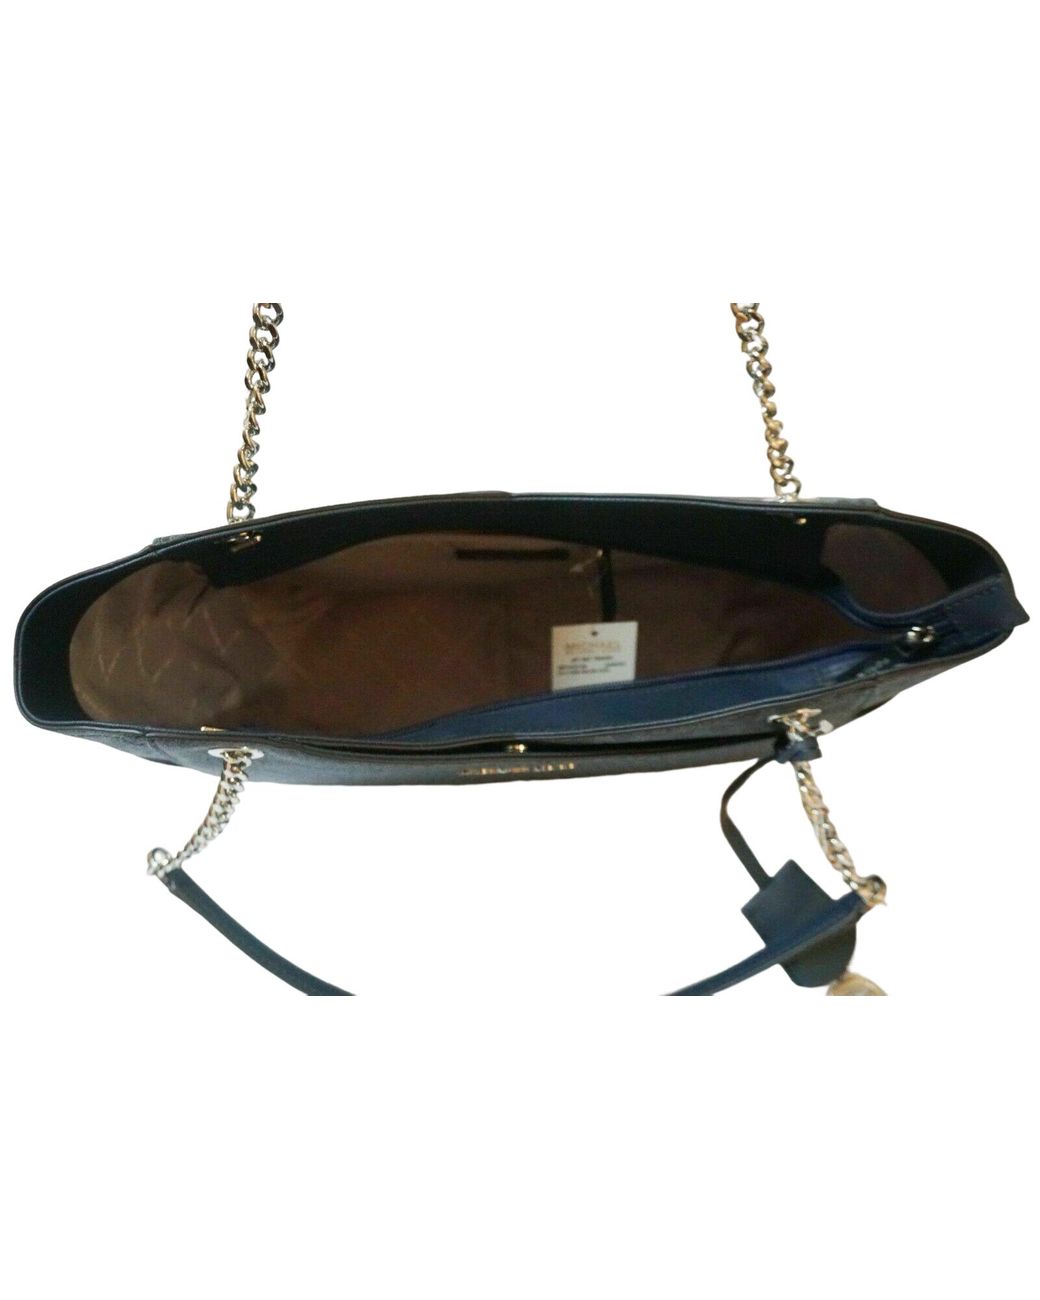 Michael Kors Shoulder Tote | Jet Set Signature Quilted Bag | Teal | Neoprene